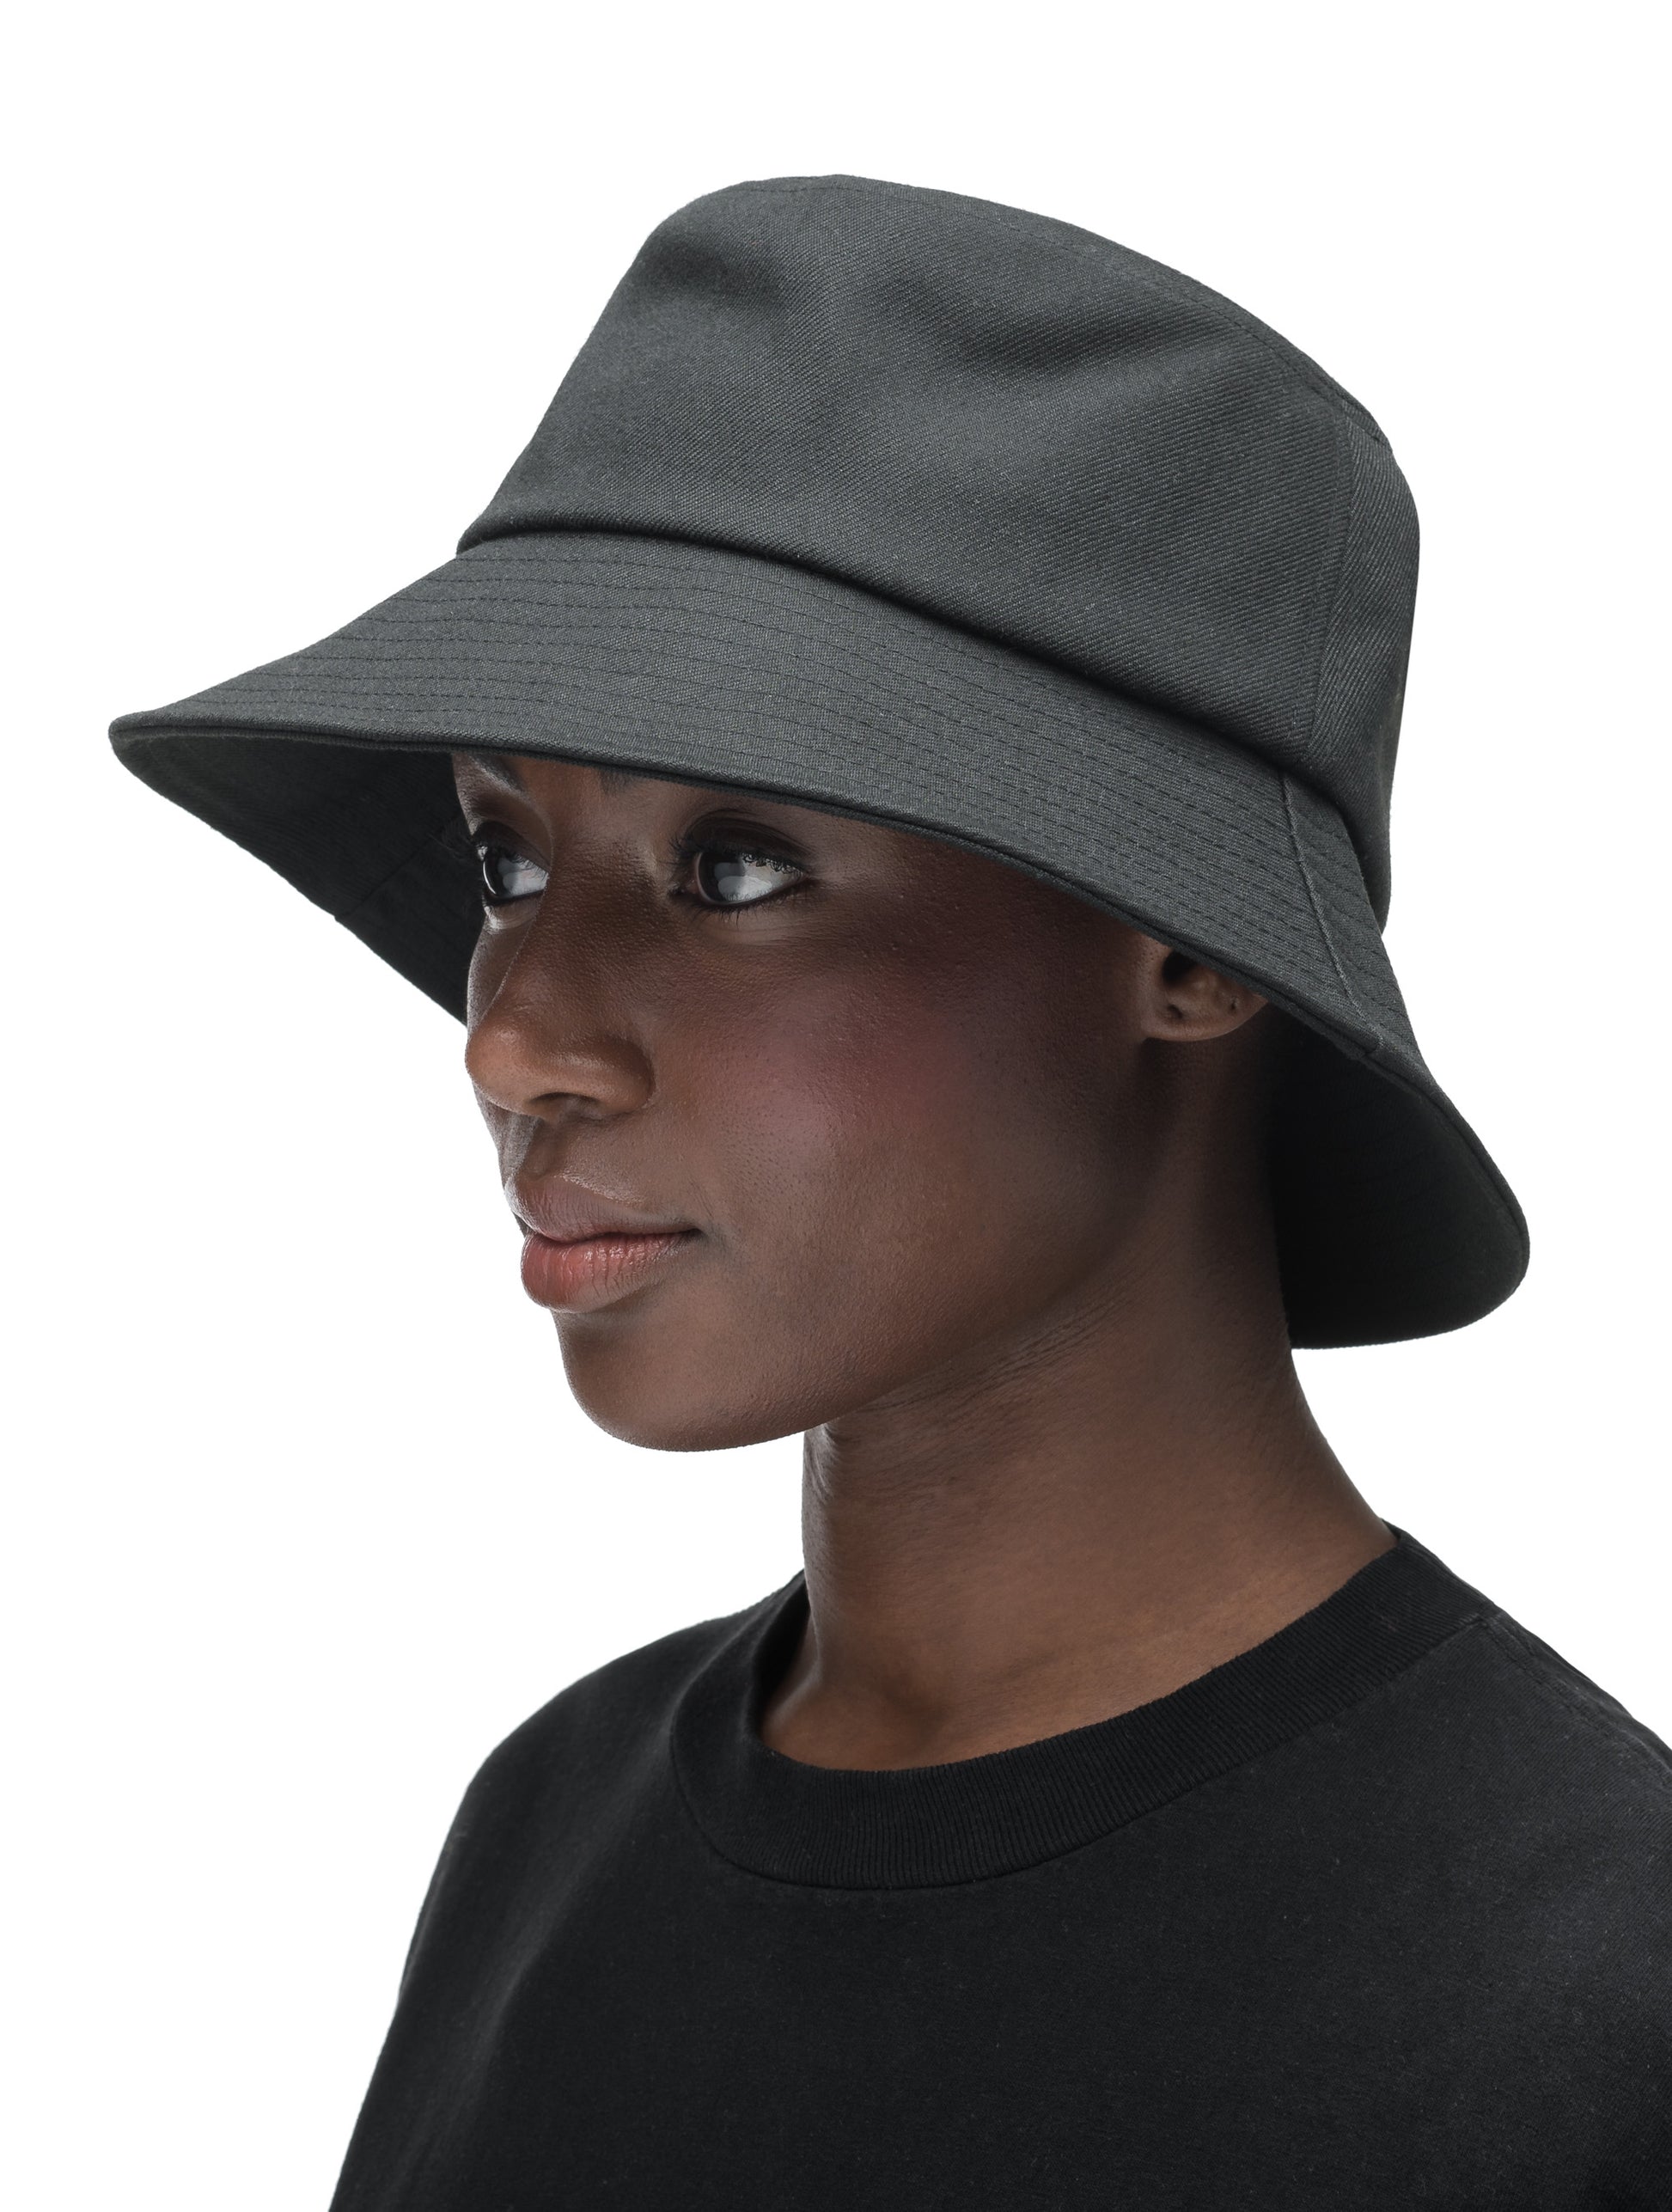 Unisex wide brim bucket hat with stitching detail on brim in Black